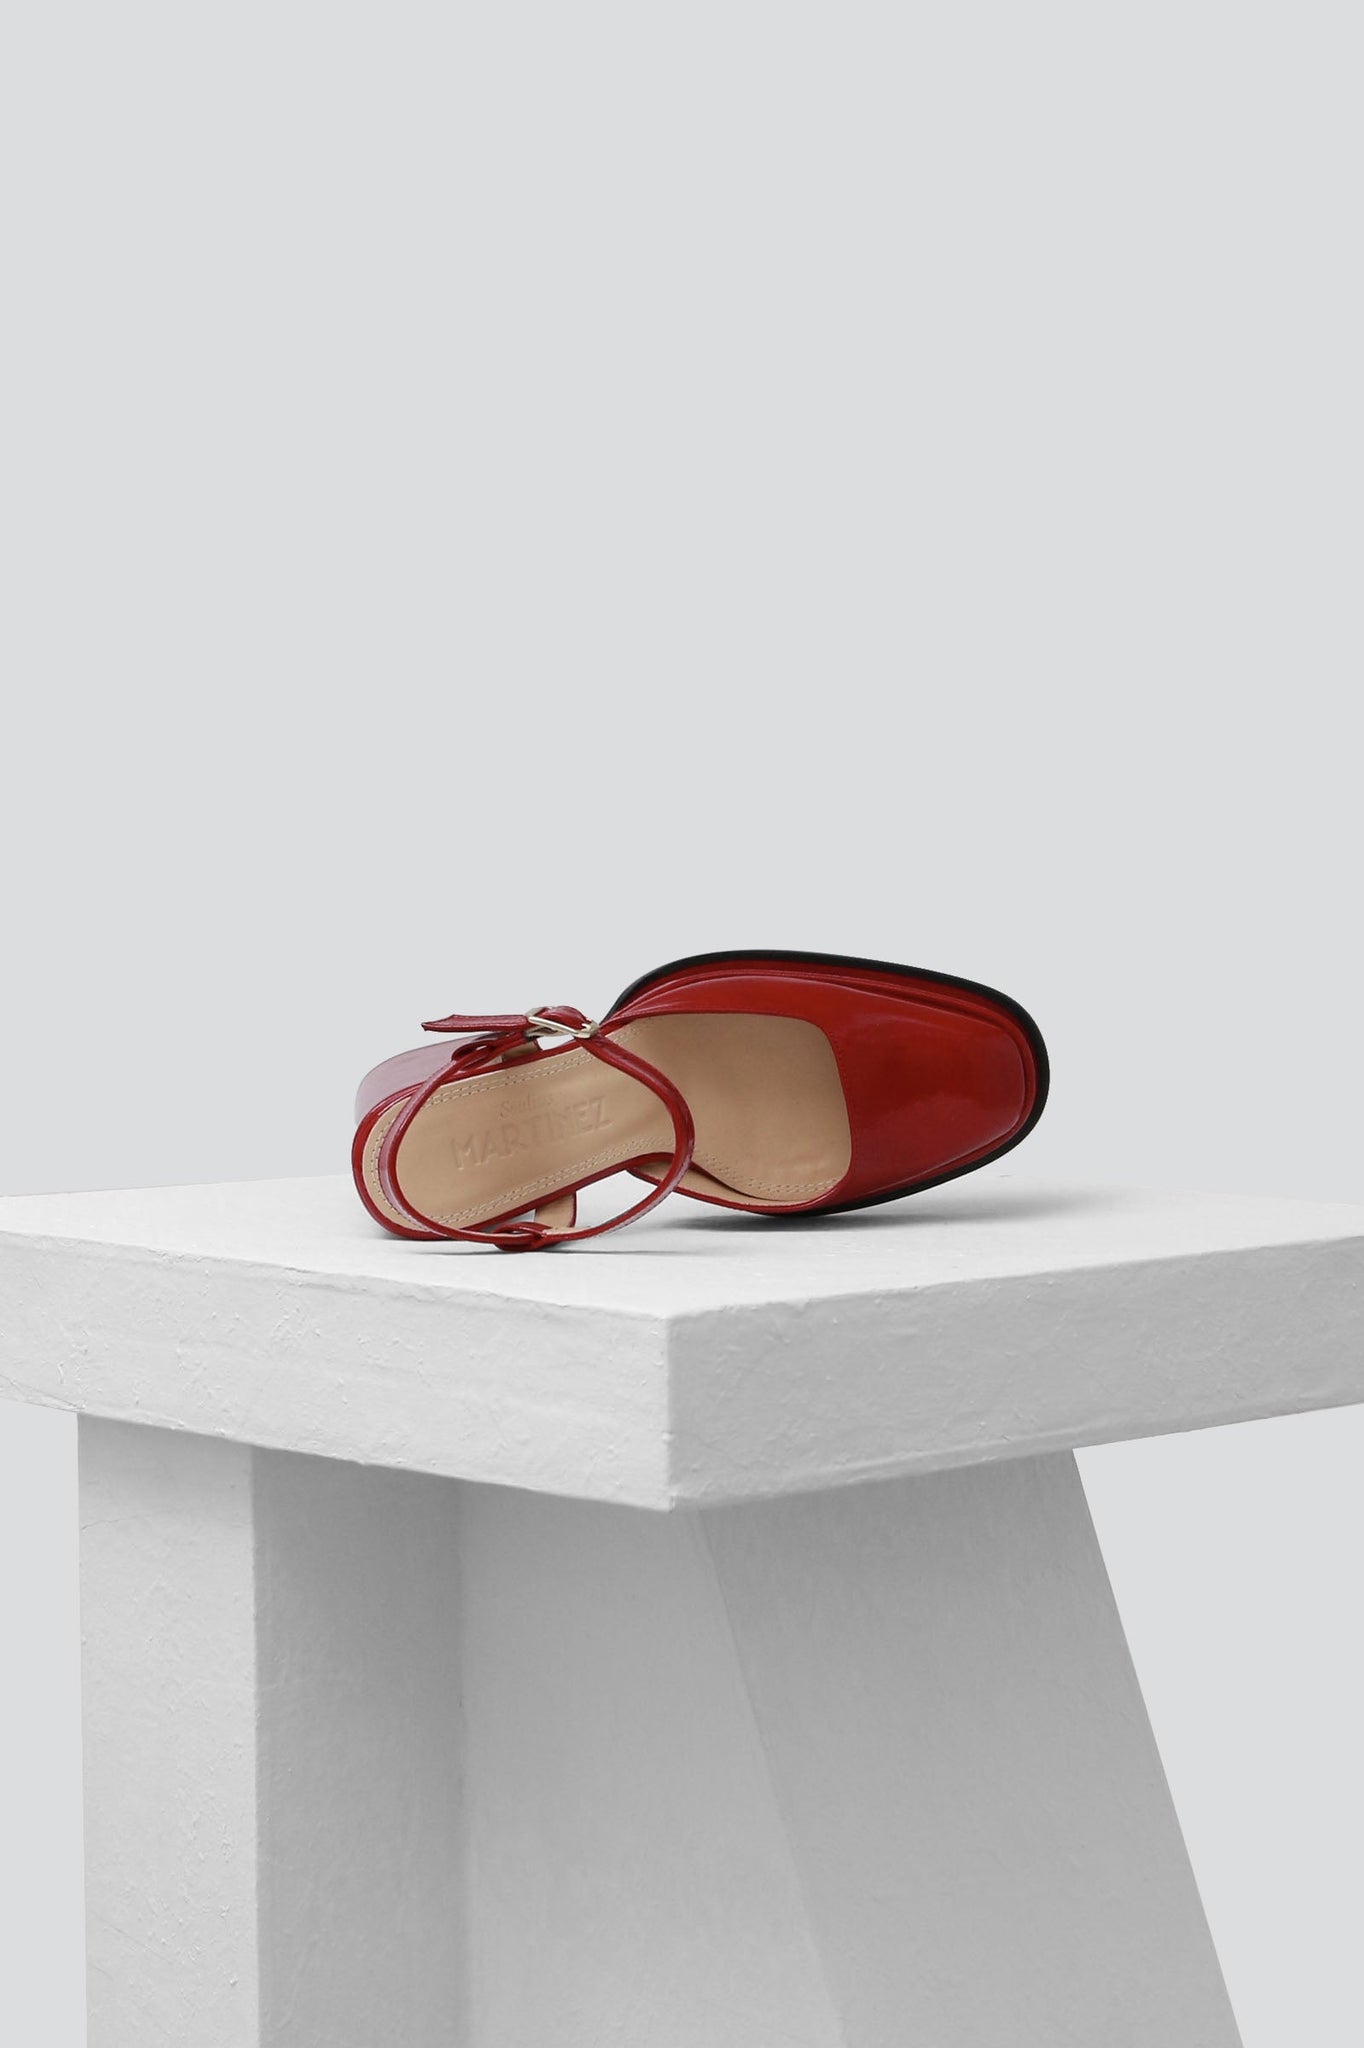 Souliers Martinez Shoes MALASANA - Berry Patent Leather Platform Pumps 